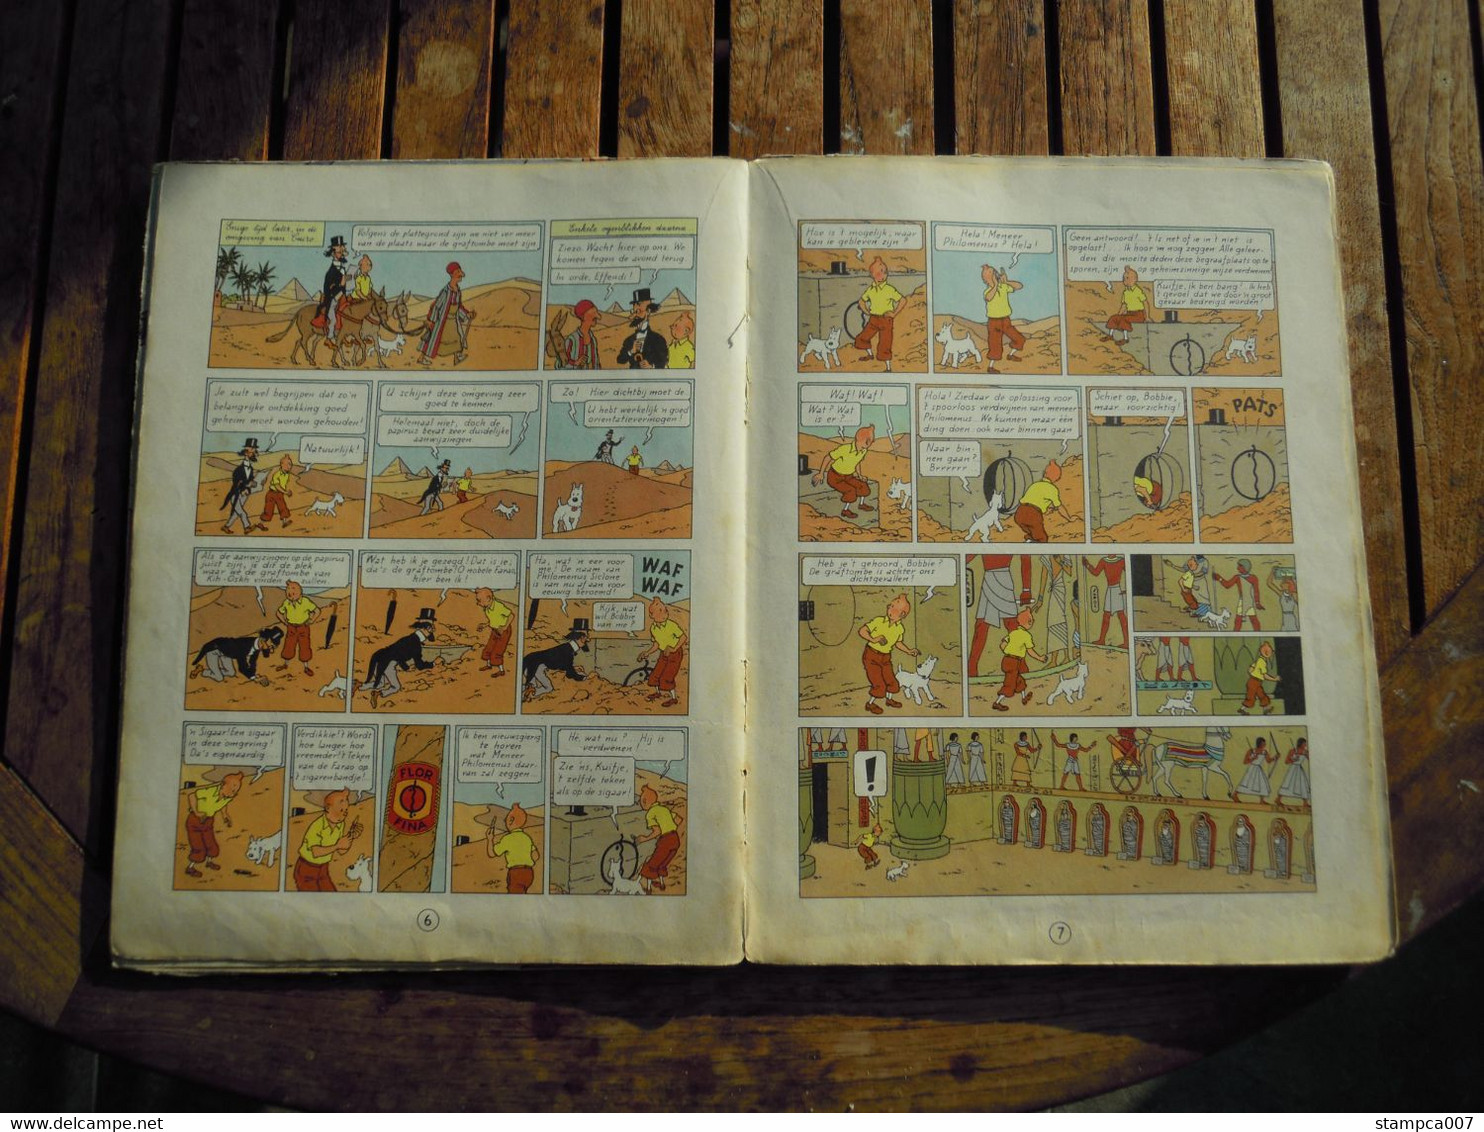 1955 EERSTE KLEURENDRUK : Strip BD Comic Cartoon Kuifje Tintin Hergé Sigaren van de Farao